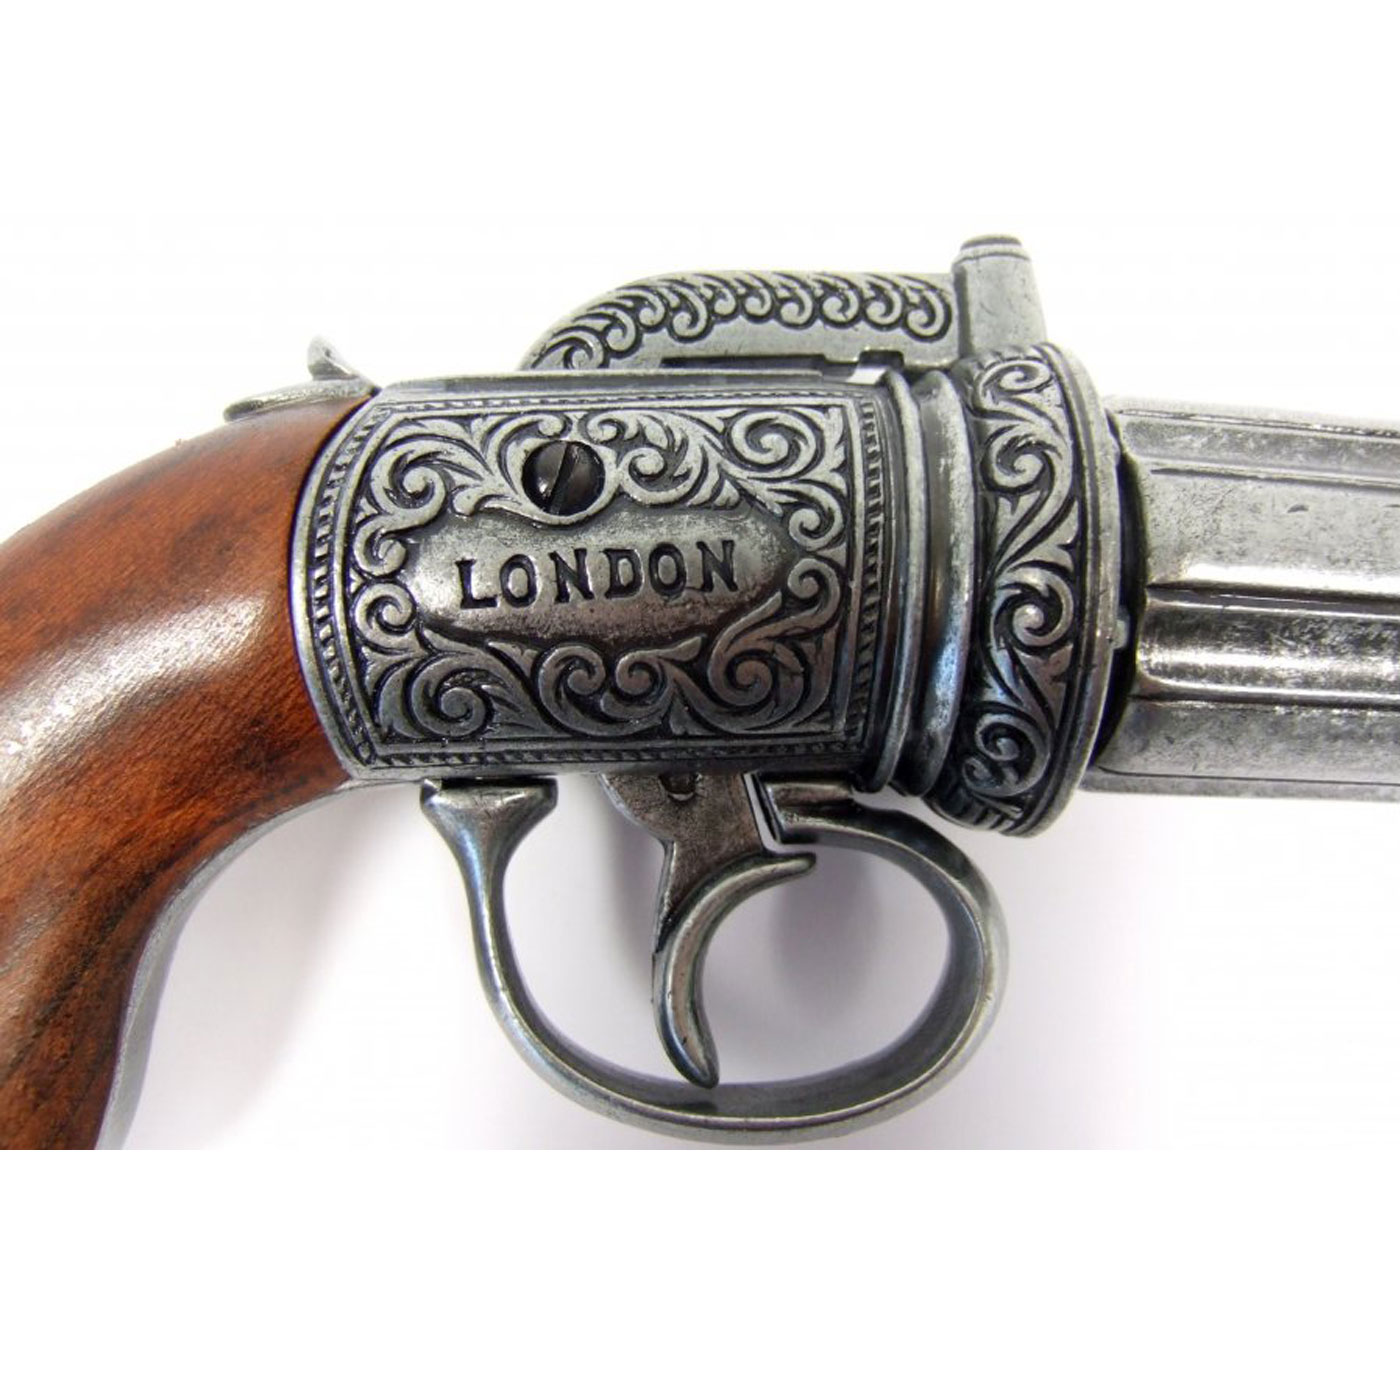 Revolver-pimentero-de-6-canones,-Inglaterra-1840.-Ref.1071.-DENIX.--(1)